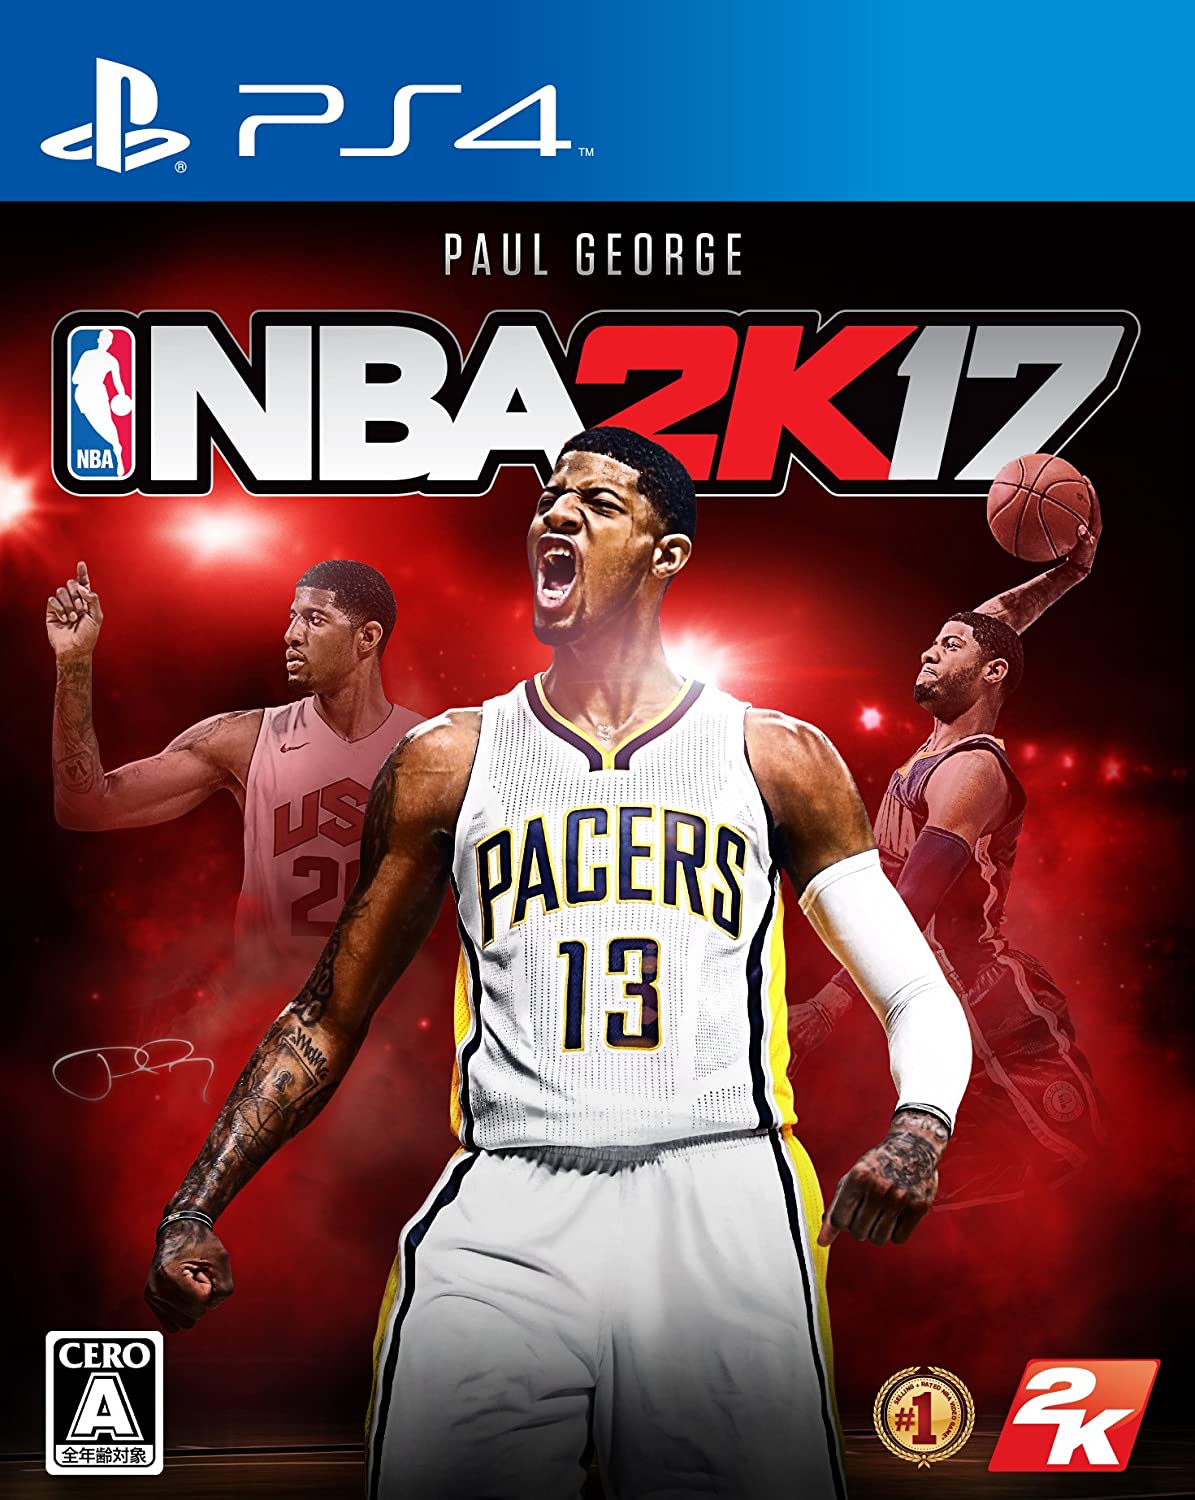 yzyÁzPS4 PlayStation 4 NBA 2K17